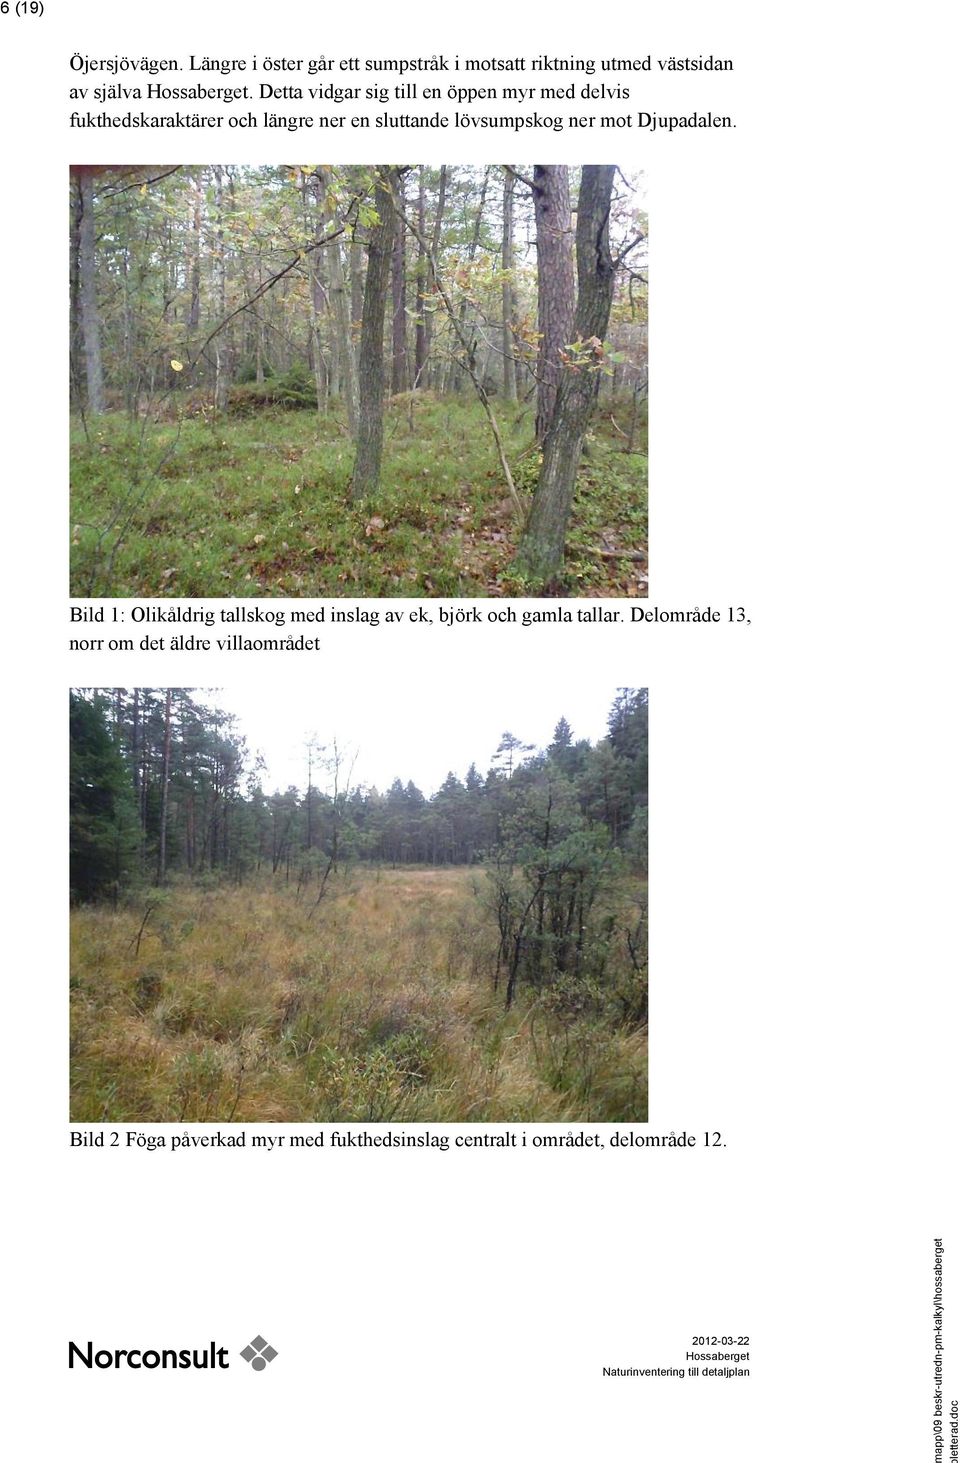 ner mot Djupadalen. Bild 1: Olikåldrig tallskog med inslag av ek, björk och gamla tallar.